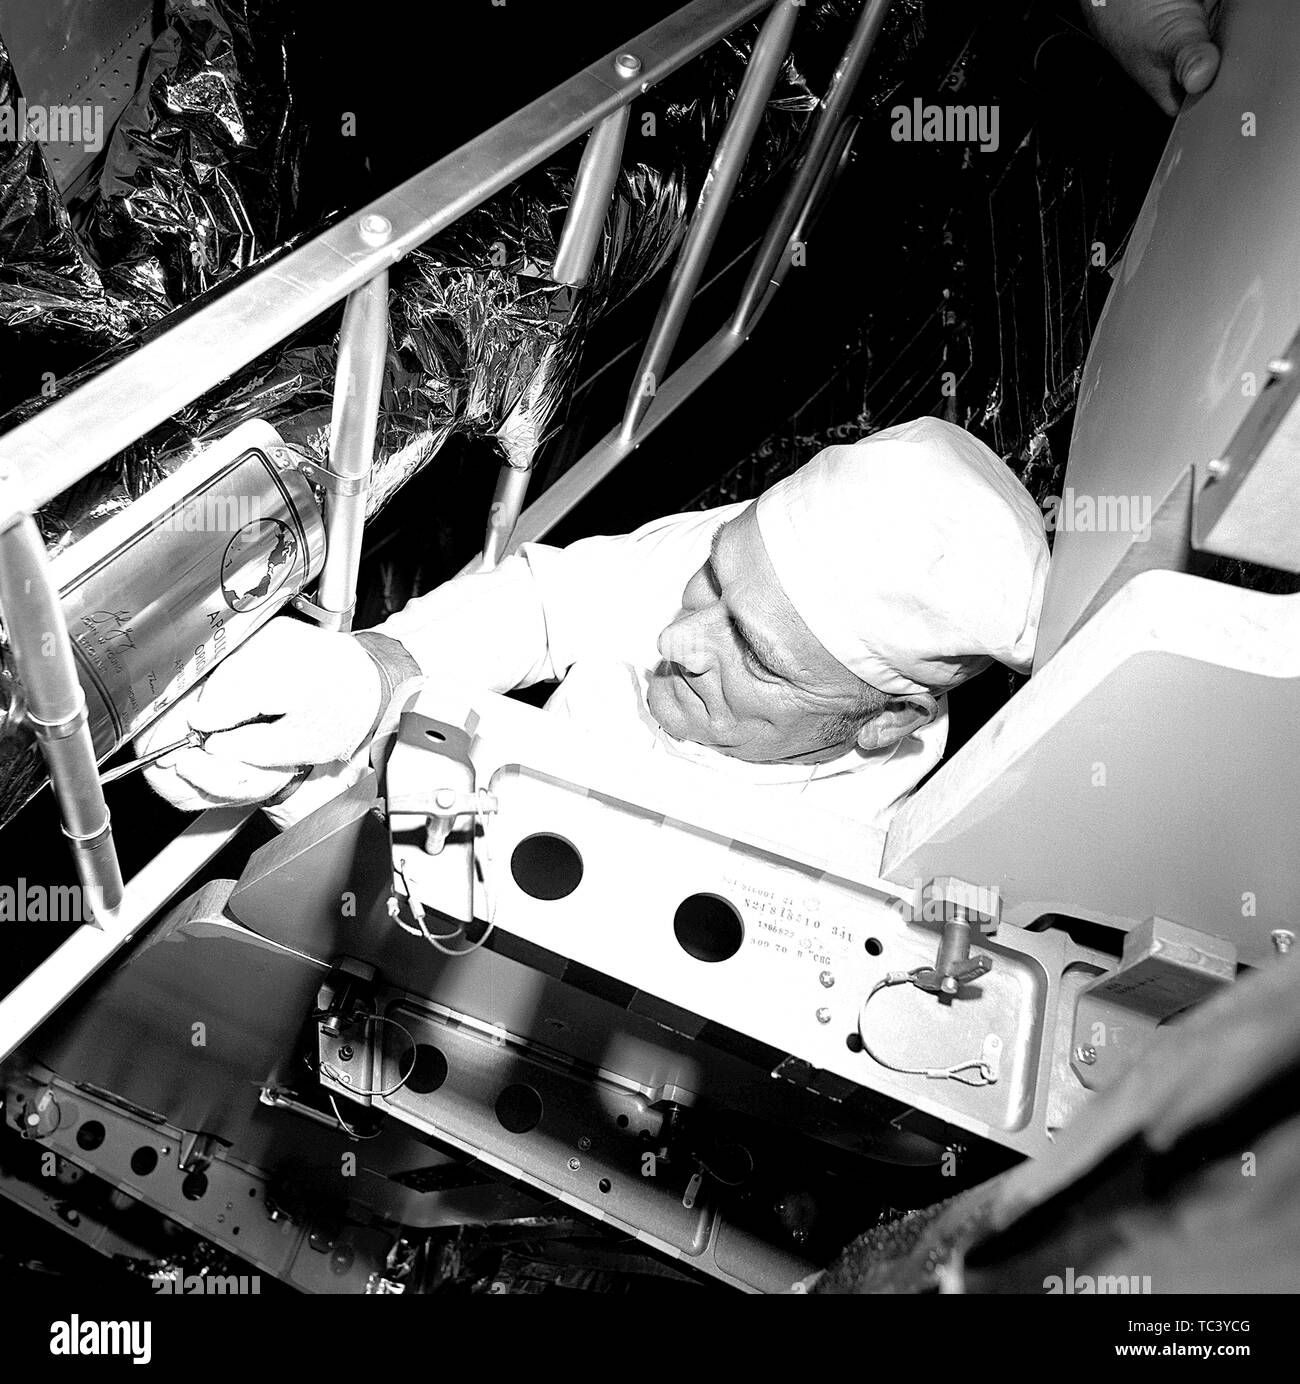 Grumman Aerospace Corporation Ken technicien Crow une plaque de fixation avec l'équipage noms et signatures de la jambe avant de l'Apollo 16 véhicule de lancement de Saturn V, le 10 avril 1972. Droit avec la permission de la National Aeronautics and Space Administration (NASA). () Banque D'Images